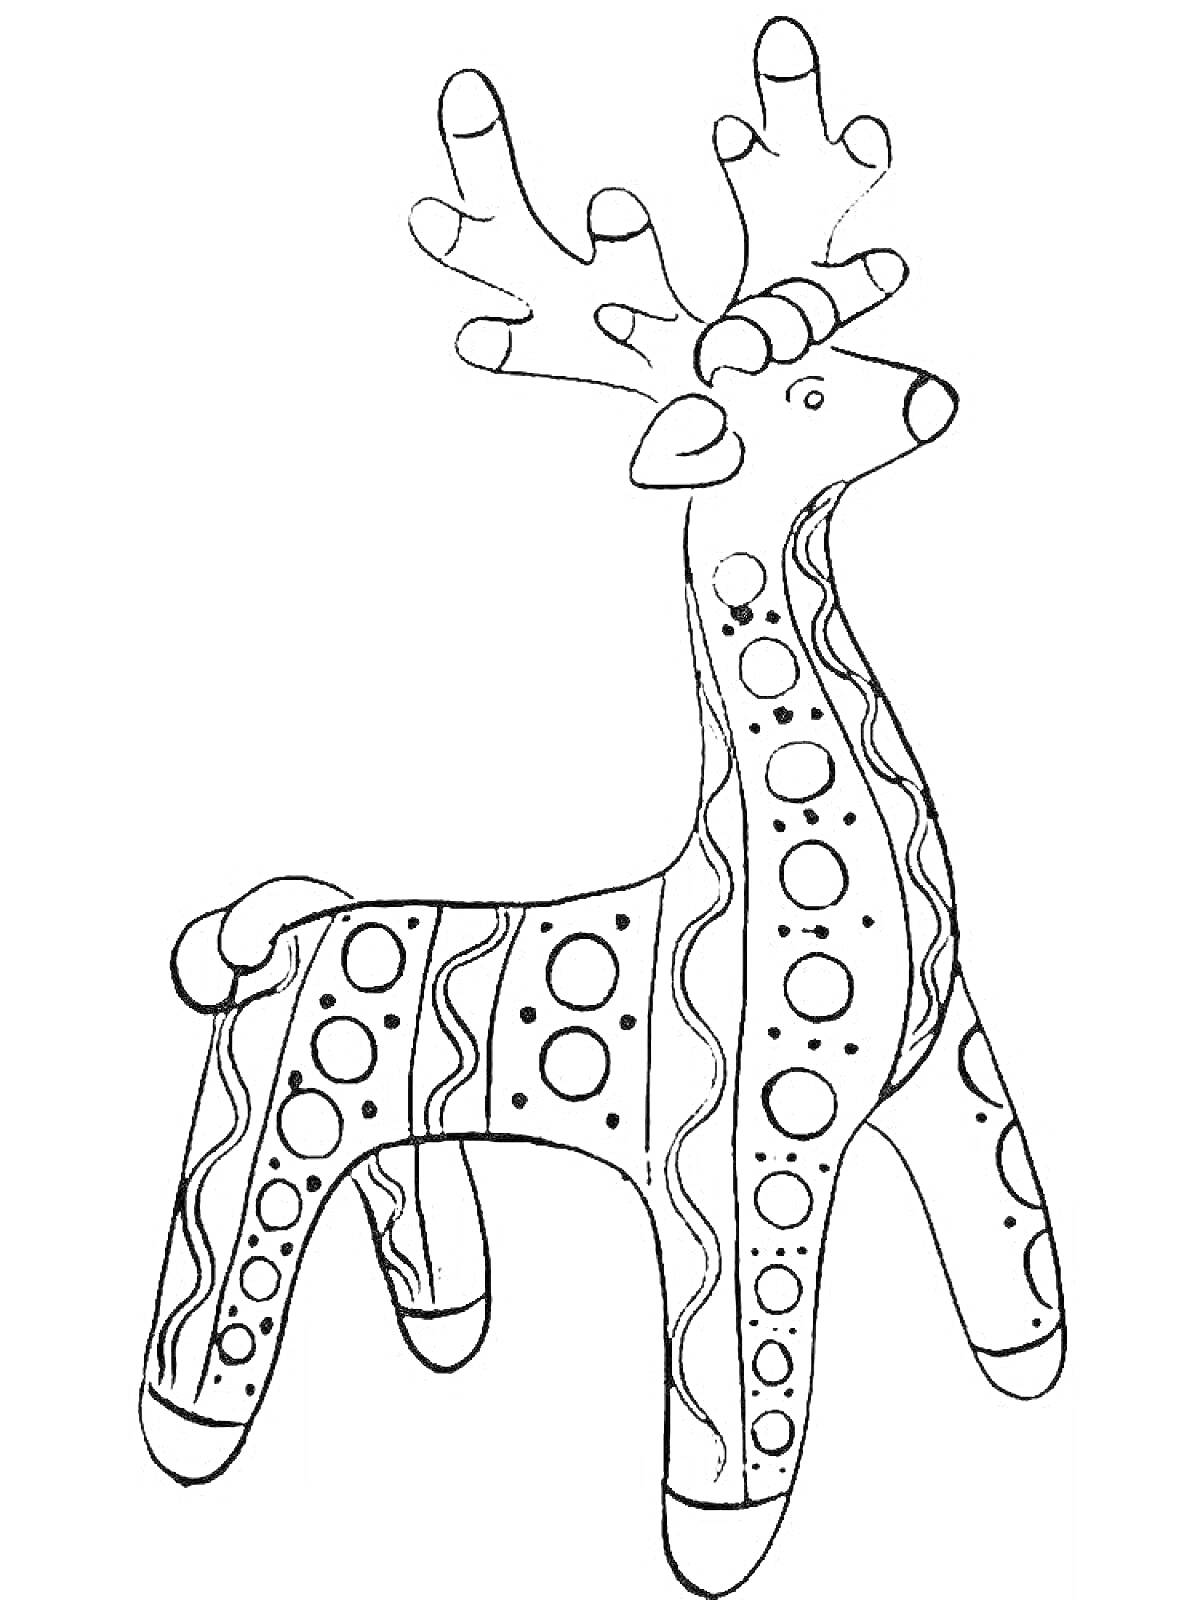 Раскраска Филимоновская игрушка олень с орнаментом, состоящим из кругов и волн